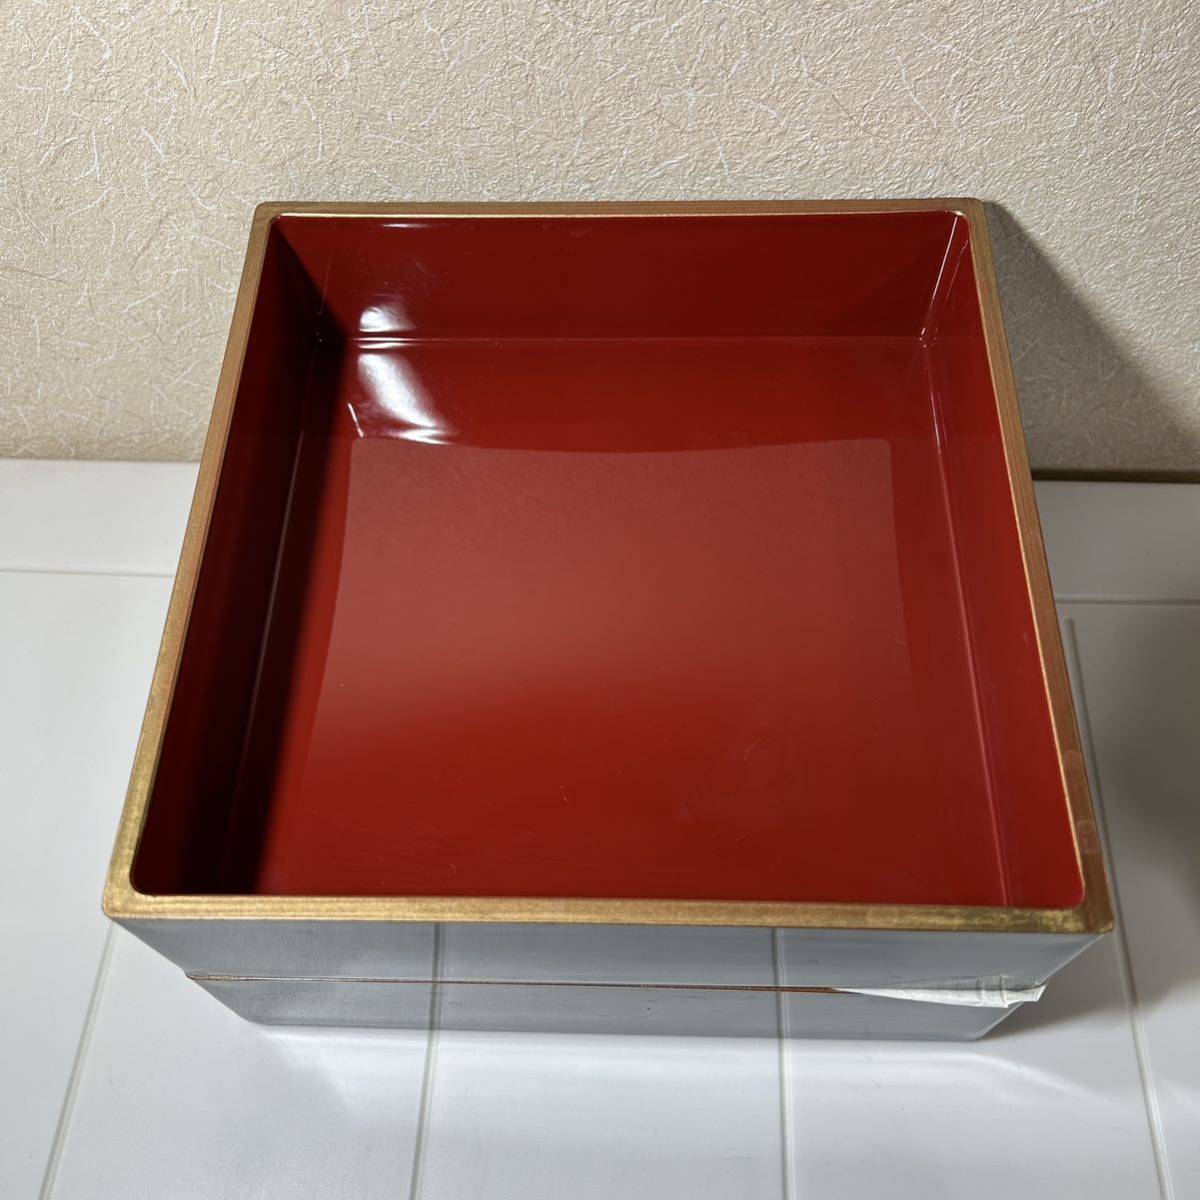  гора средний краска три уровень -слойный 6.5 размер чёрный .. золотой многоярусный контейнер осэти соединение лакированные изделия коробка для завтрака японская посуда 